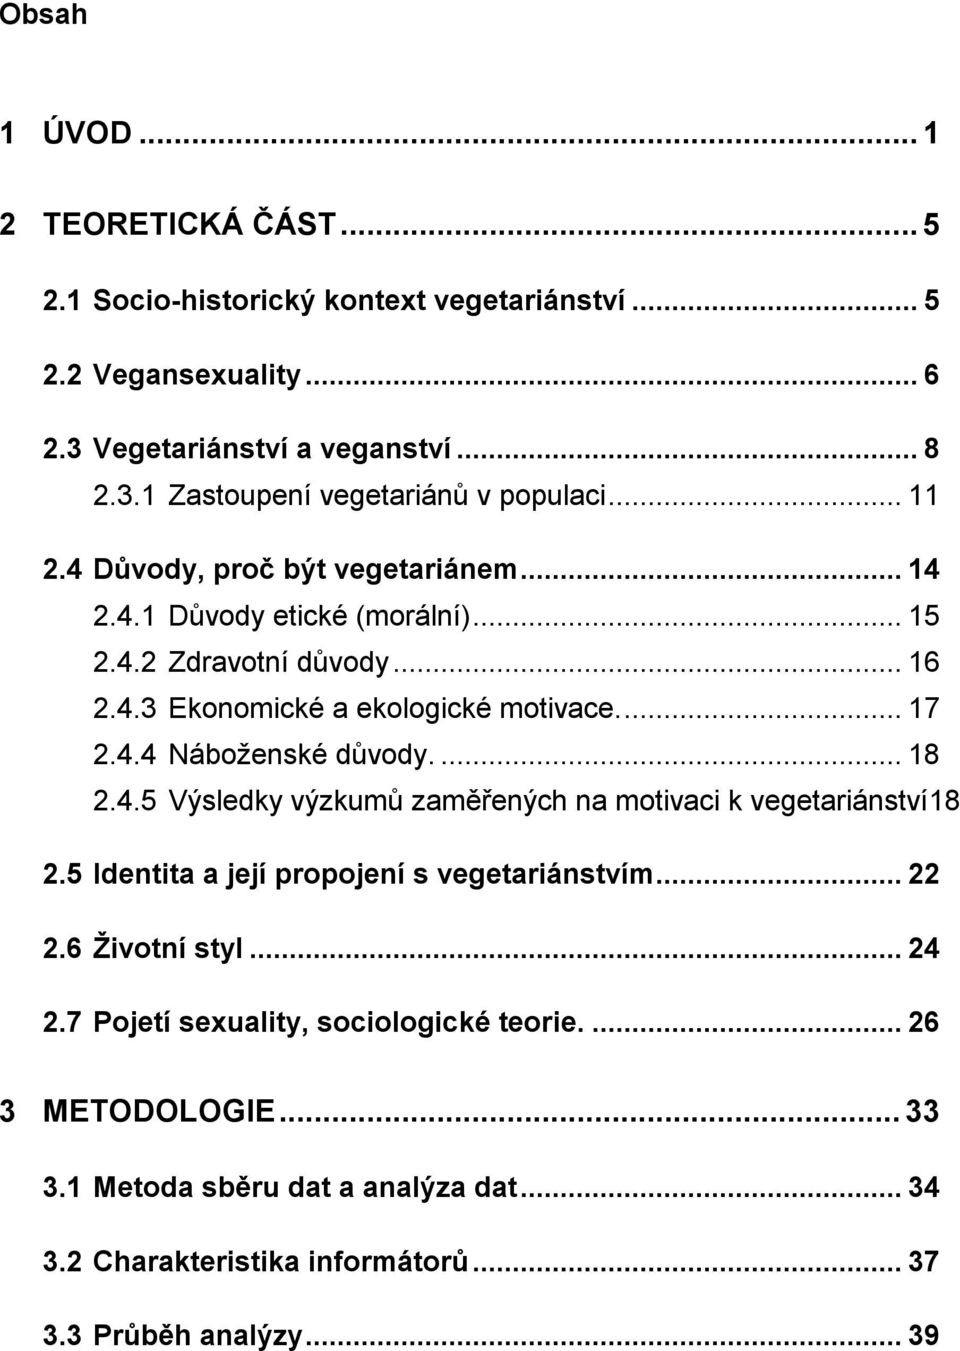 ... 18 2.4.5 Výsledky výzkumů zaměřených na motivaci k vegetariánství18 2.5 Identita a její propojení s vegetariánstvím... 22 2.6 Ţivotní styl... 24 2.